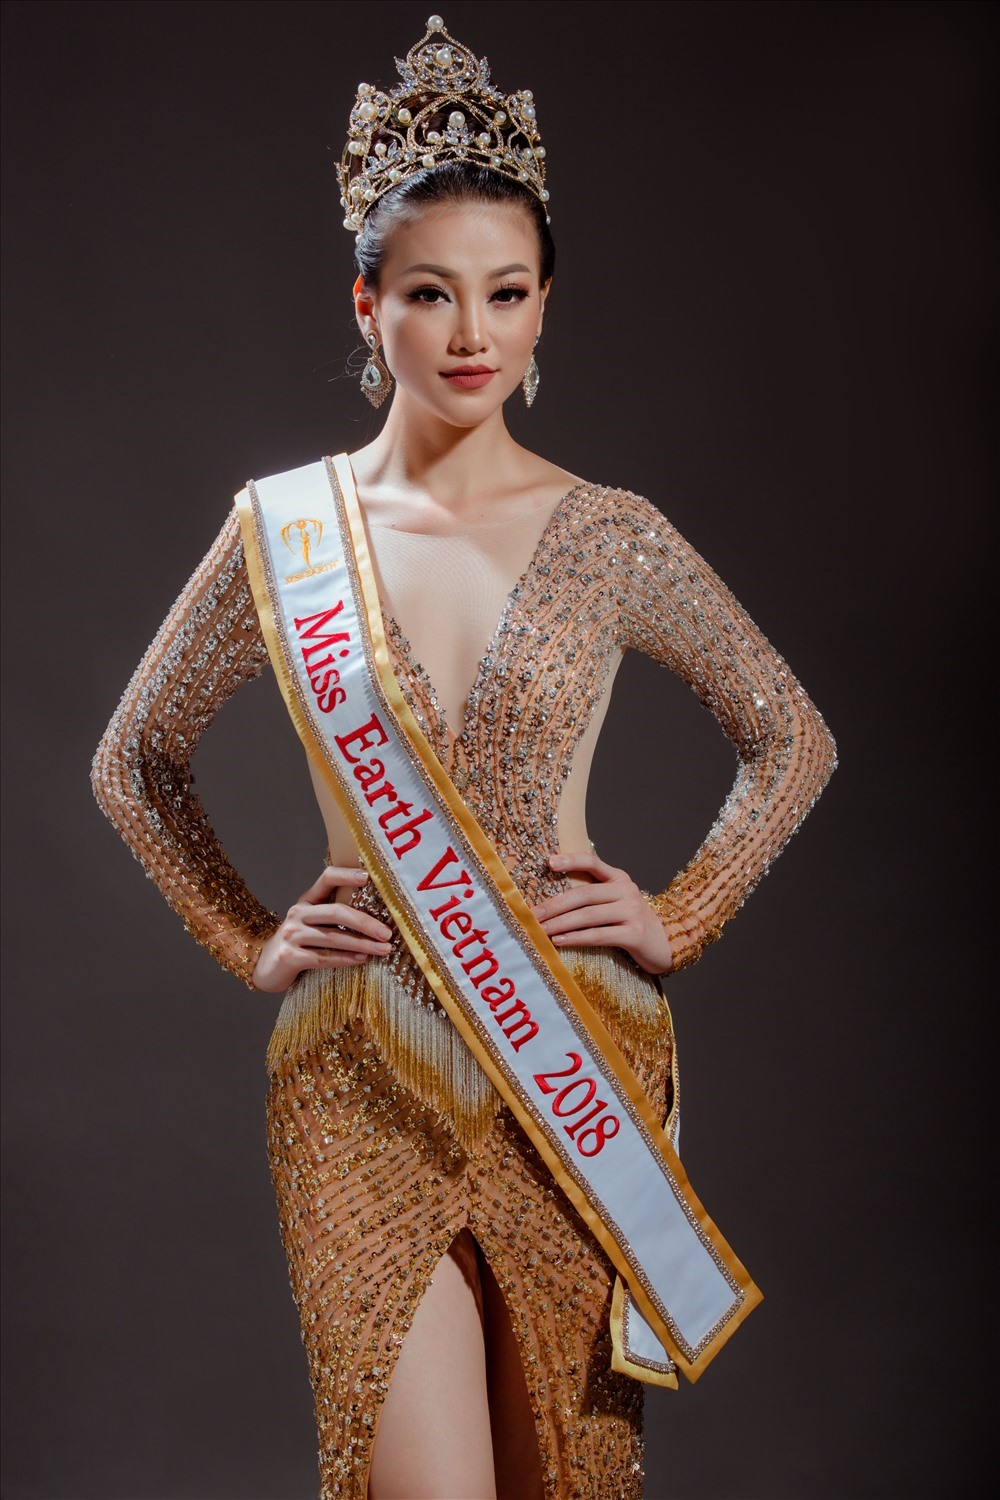 Phương Khánh được đích thân Miss Earth 2015 Angelia Ong lựa chọn theo quan điểm và kinh nghiệm cá nhân trong vòng tuyển chọn được tổ chức tại Hà Nội vào cuối tháng 8/2018 với sự tham dự của gần 200 thí sinh.
